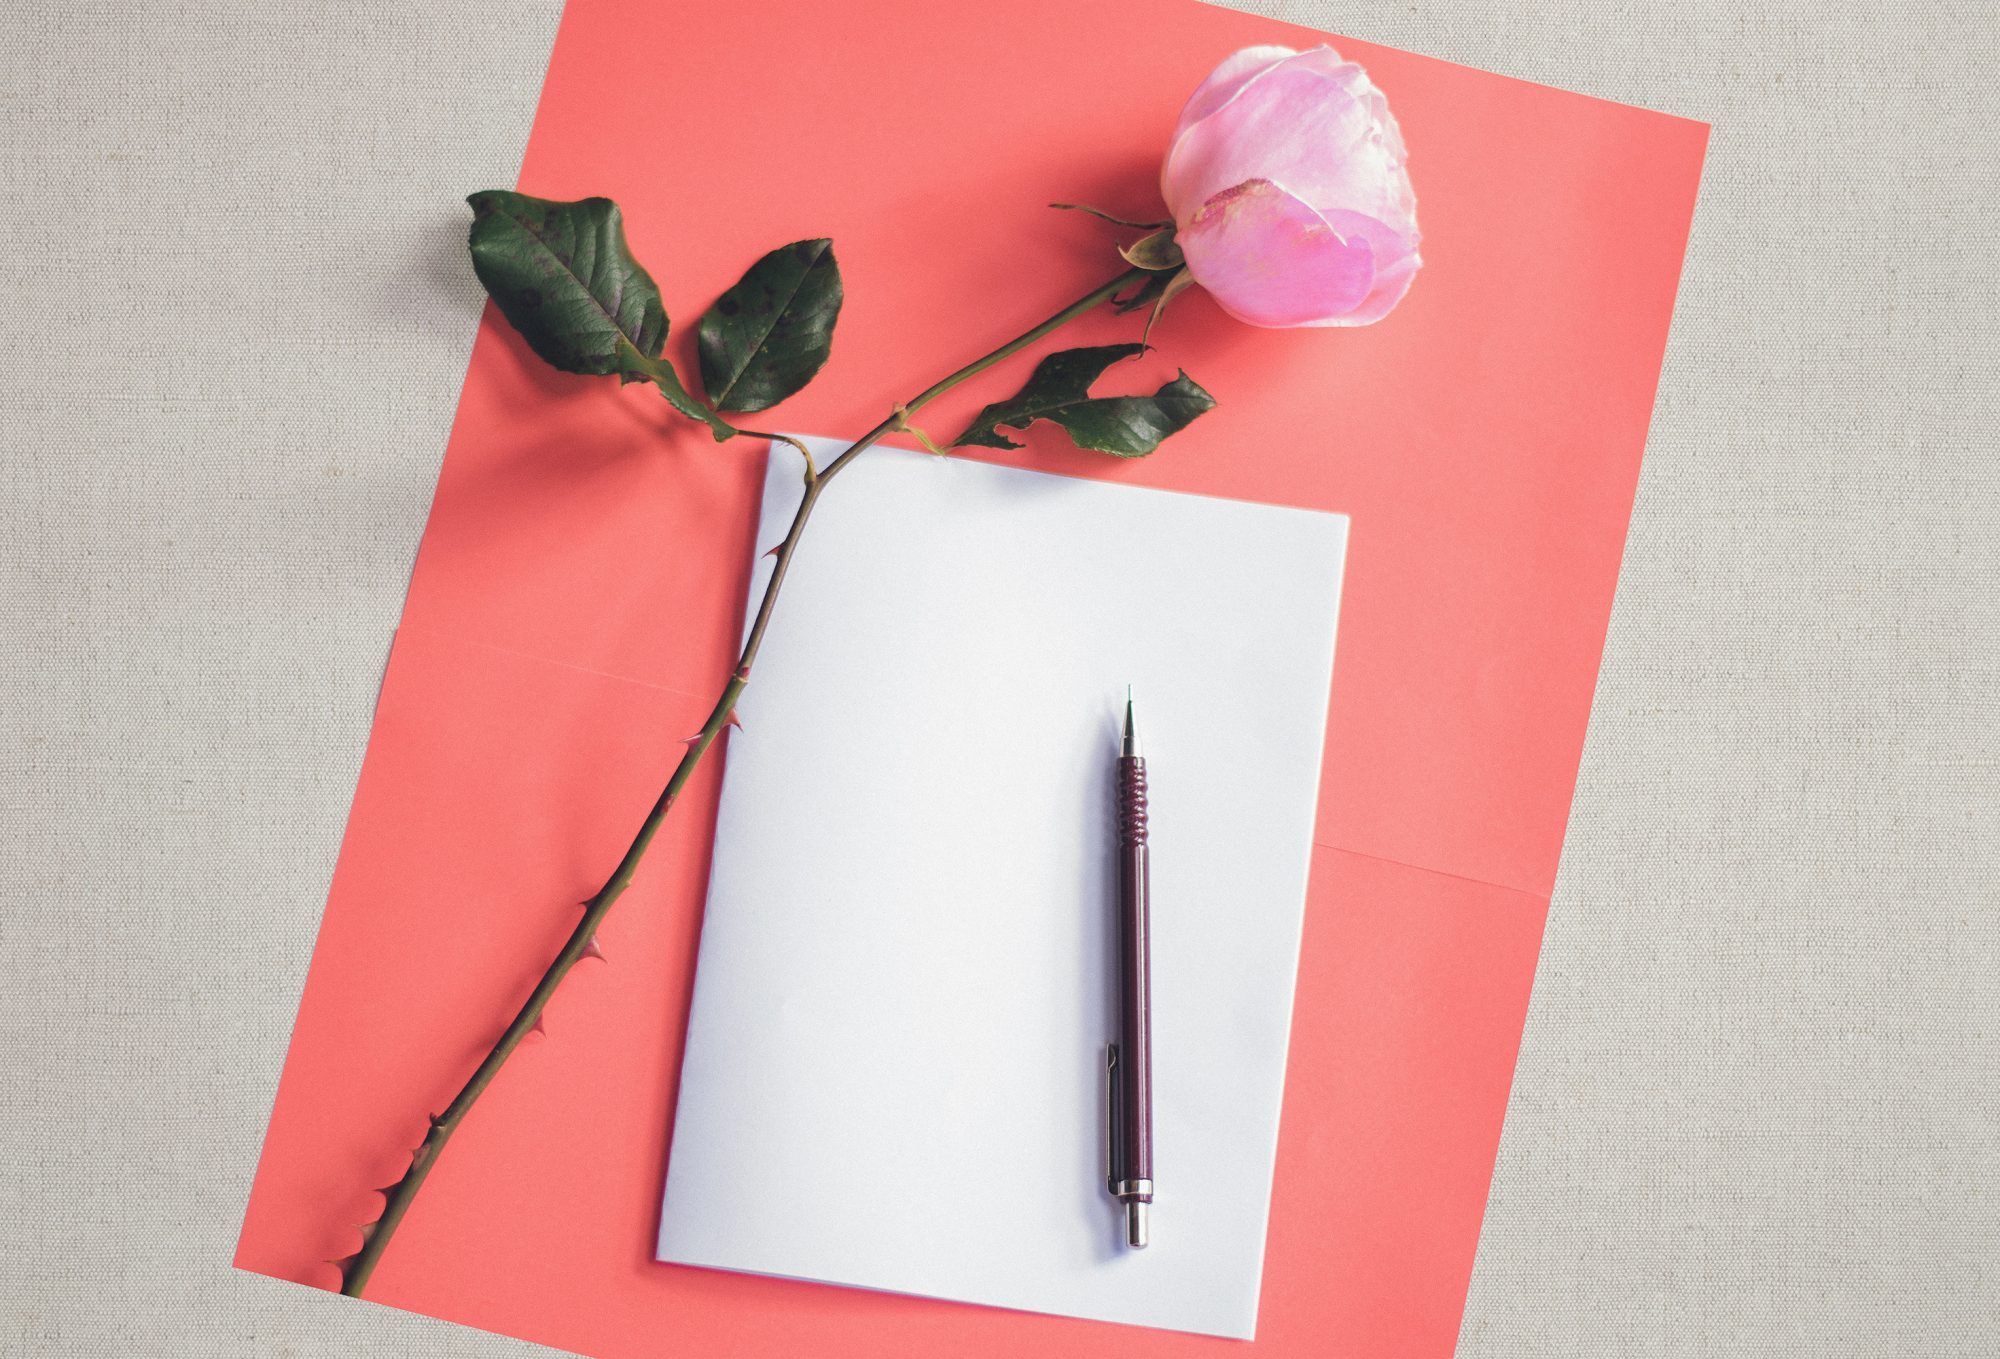 5 жизнеутверждающих преимуществ написания писем от руки, согласно исследованиям